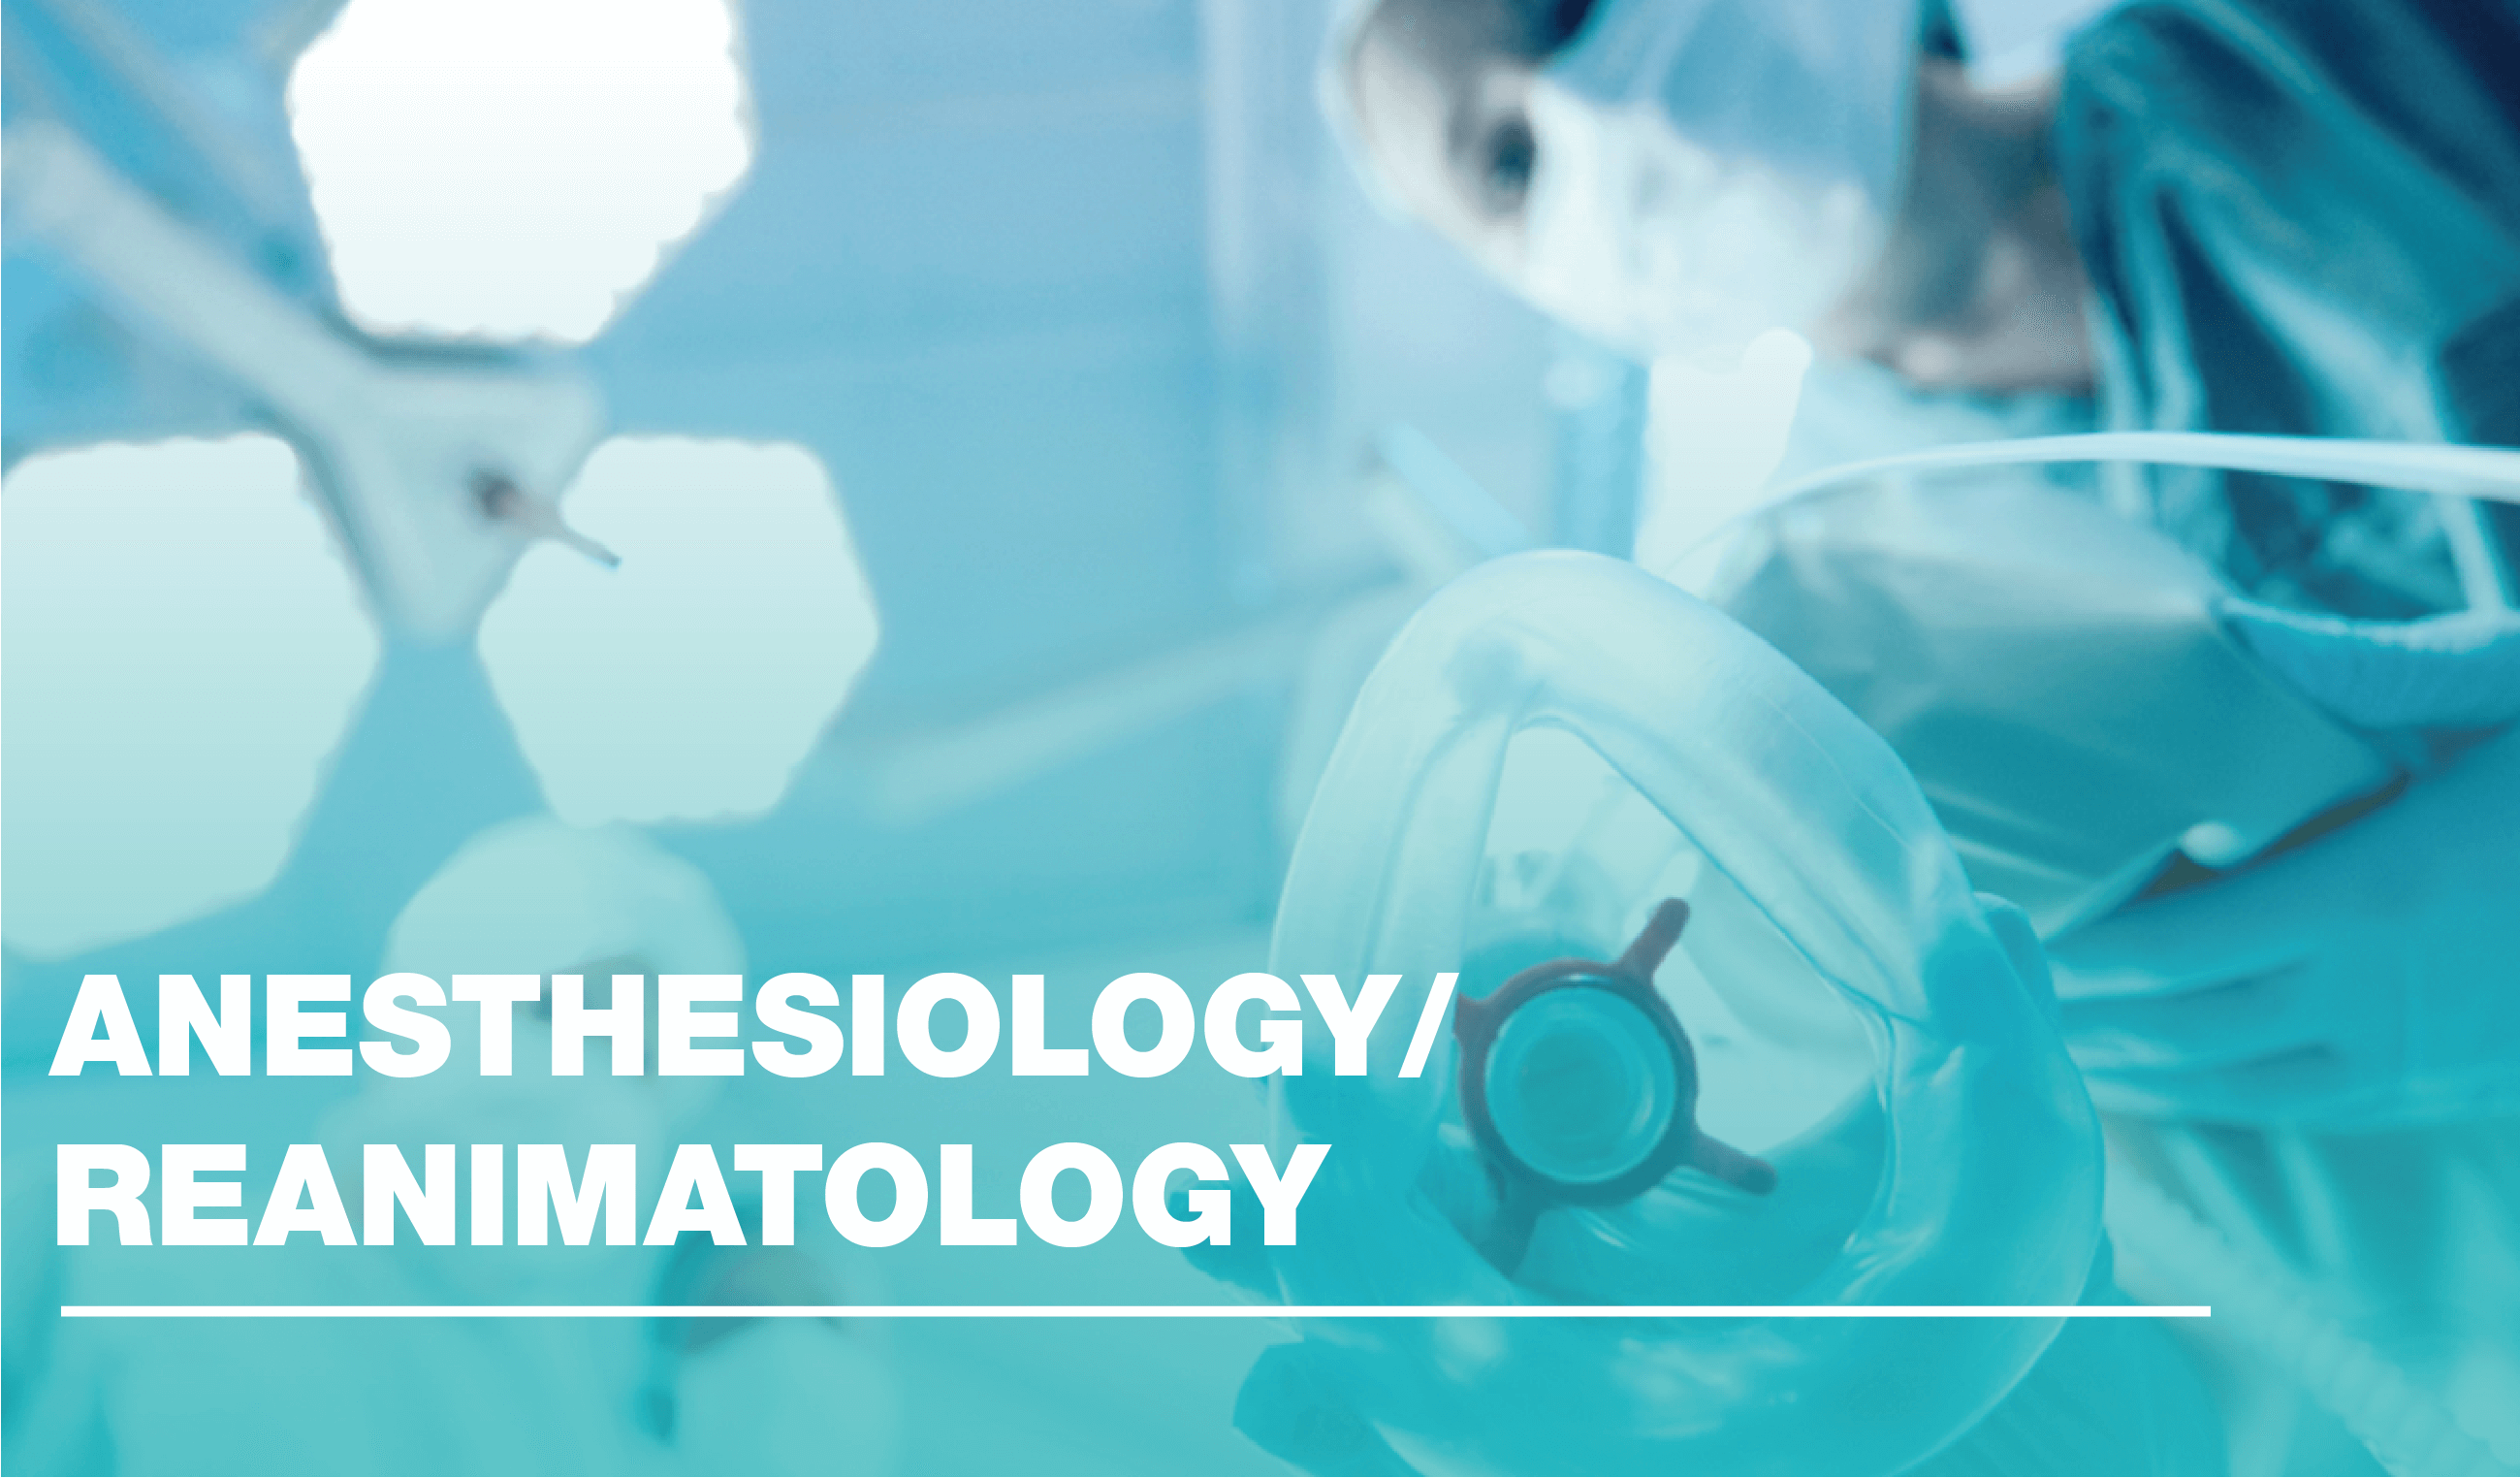 Anesthesiology/Reanimatology